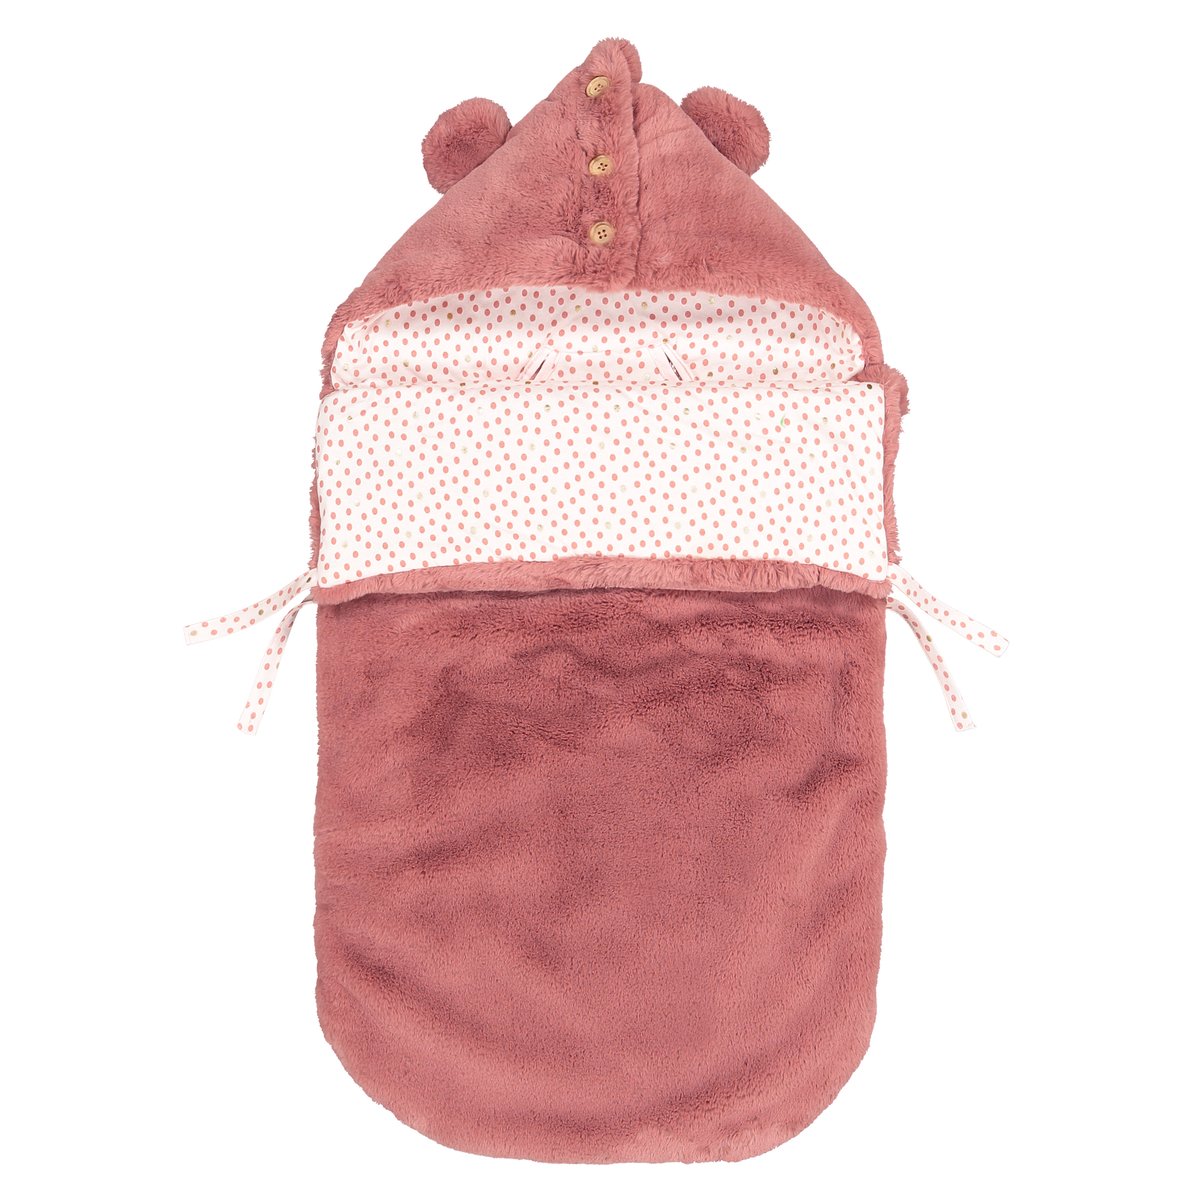 Конверт La Redoute Для новорожденного с капюшоном из искусственного меха единый размер розовый - фото 1